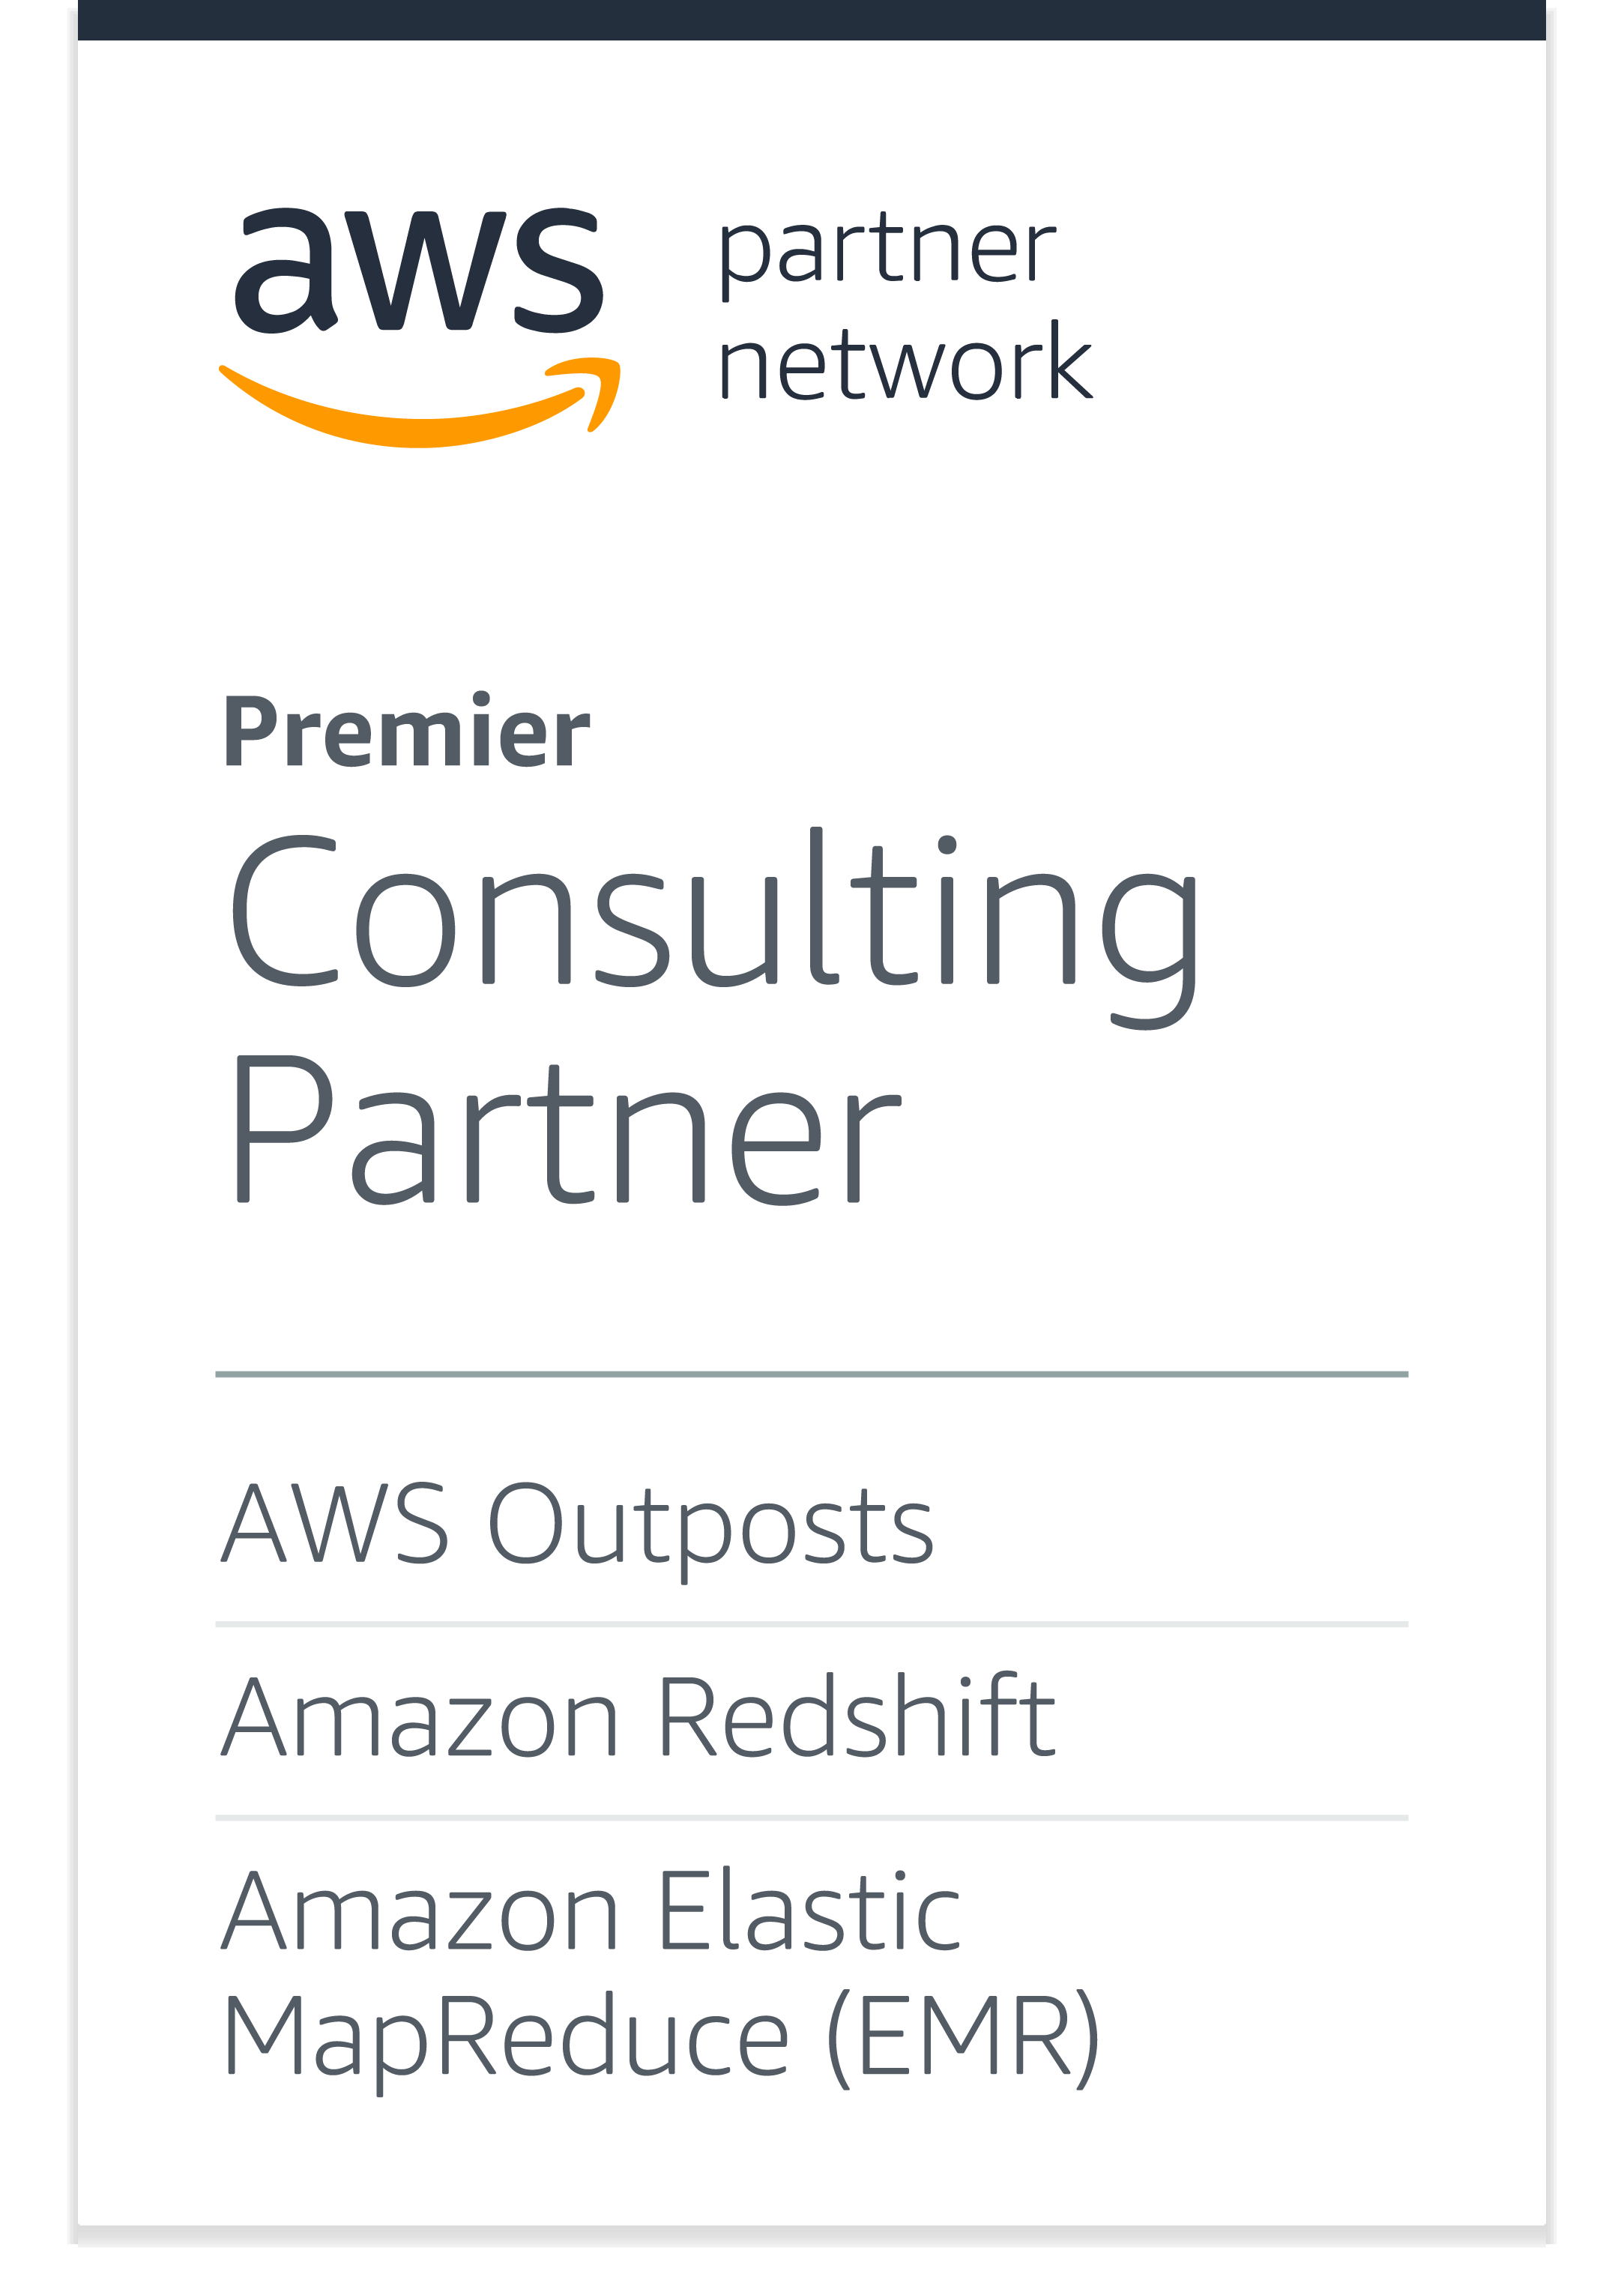 AWS Partner Network (APN) Premier Consulting Partner